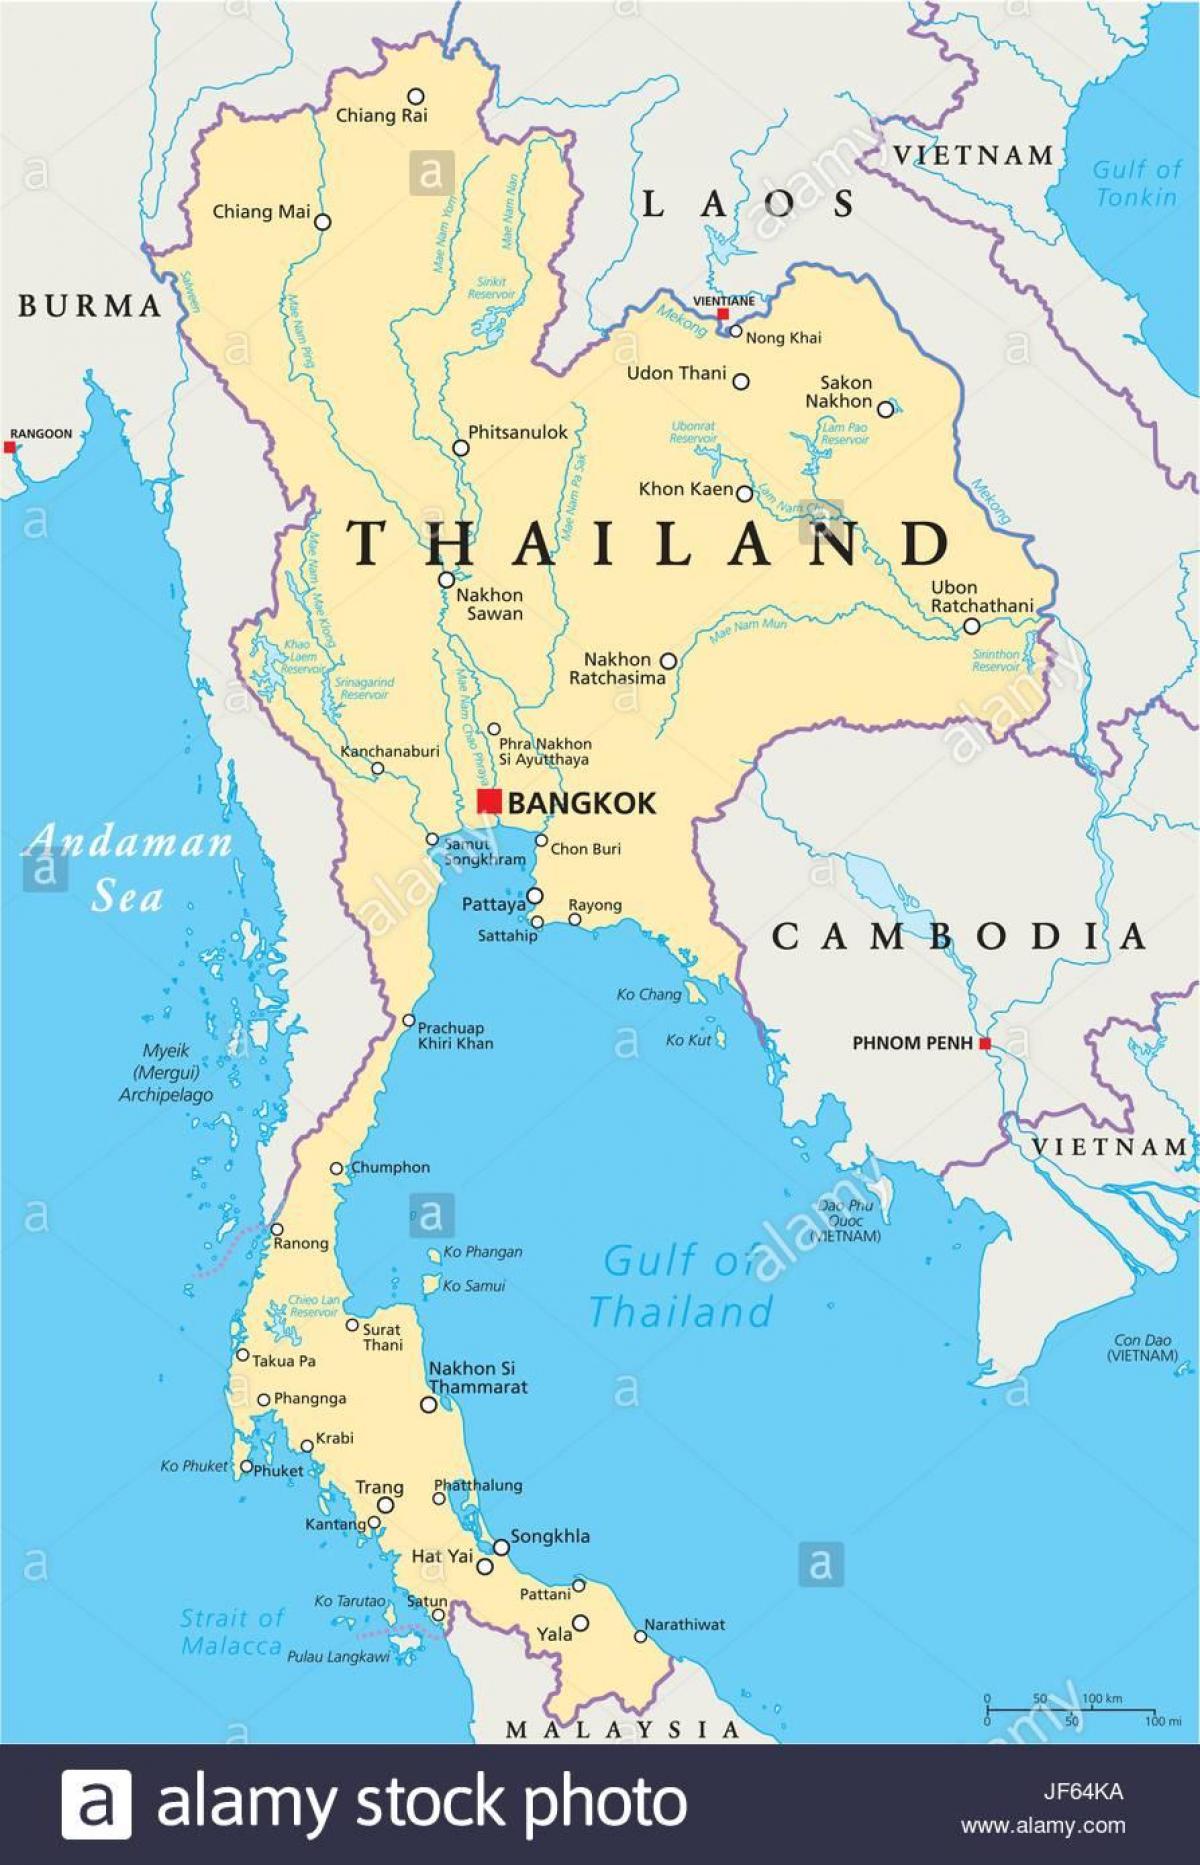 بانکوک در یک نقشه جهان